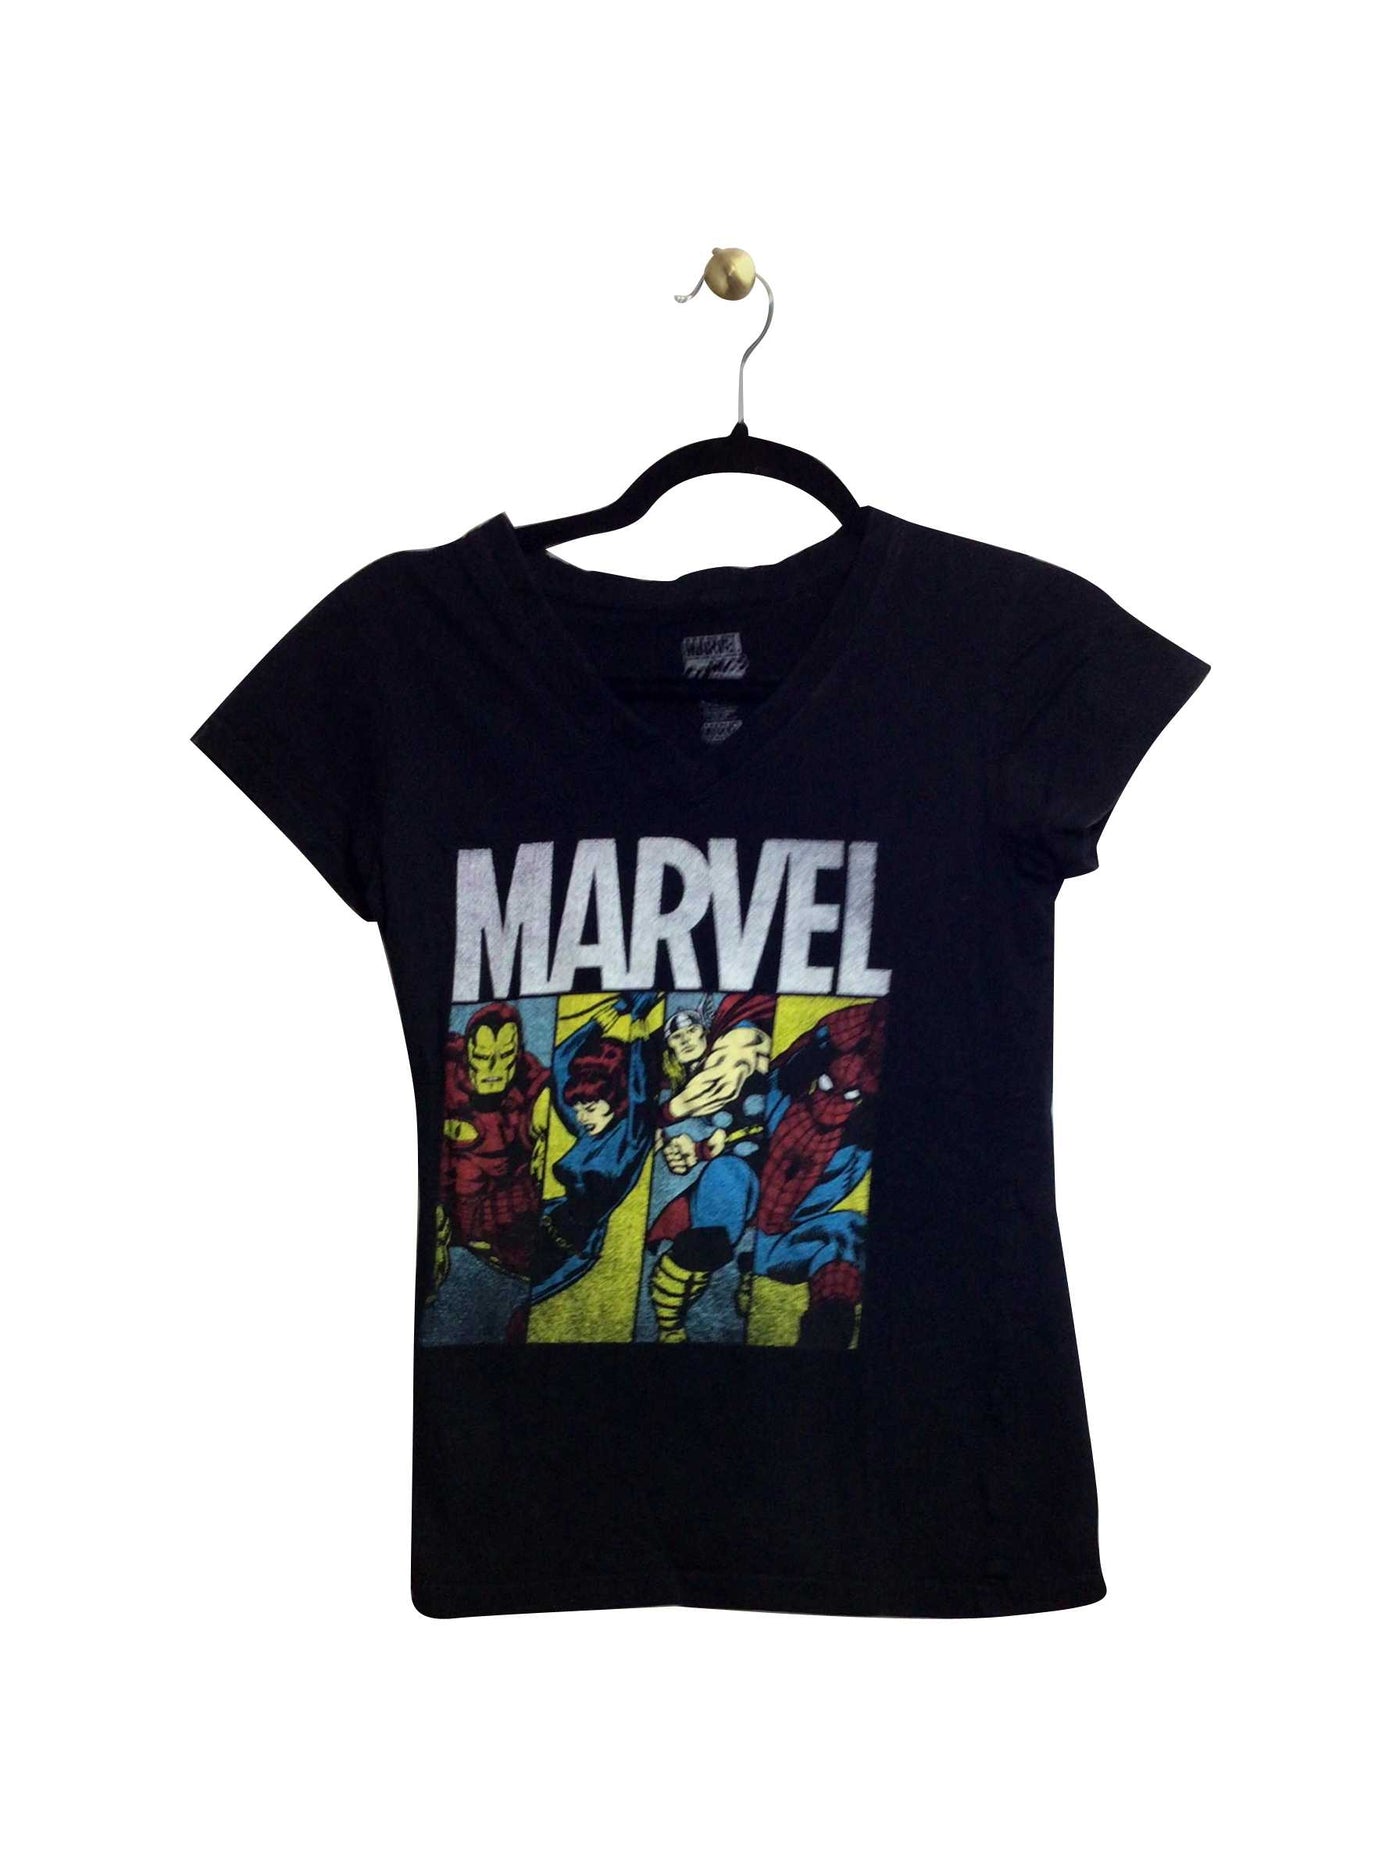 MARVEL Regular fit T-shirt in Black - Size S | 11.99 $ KOOP